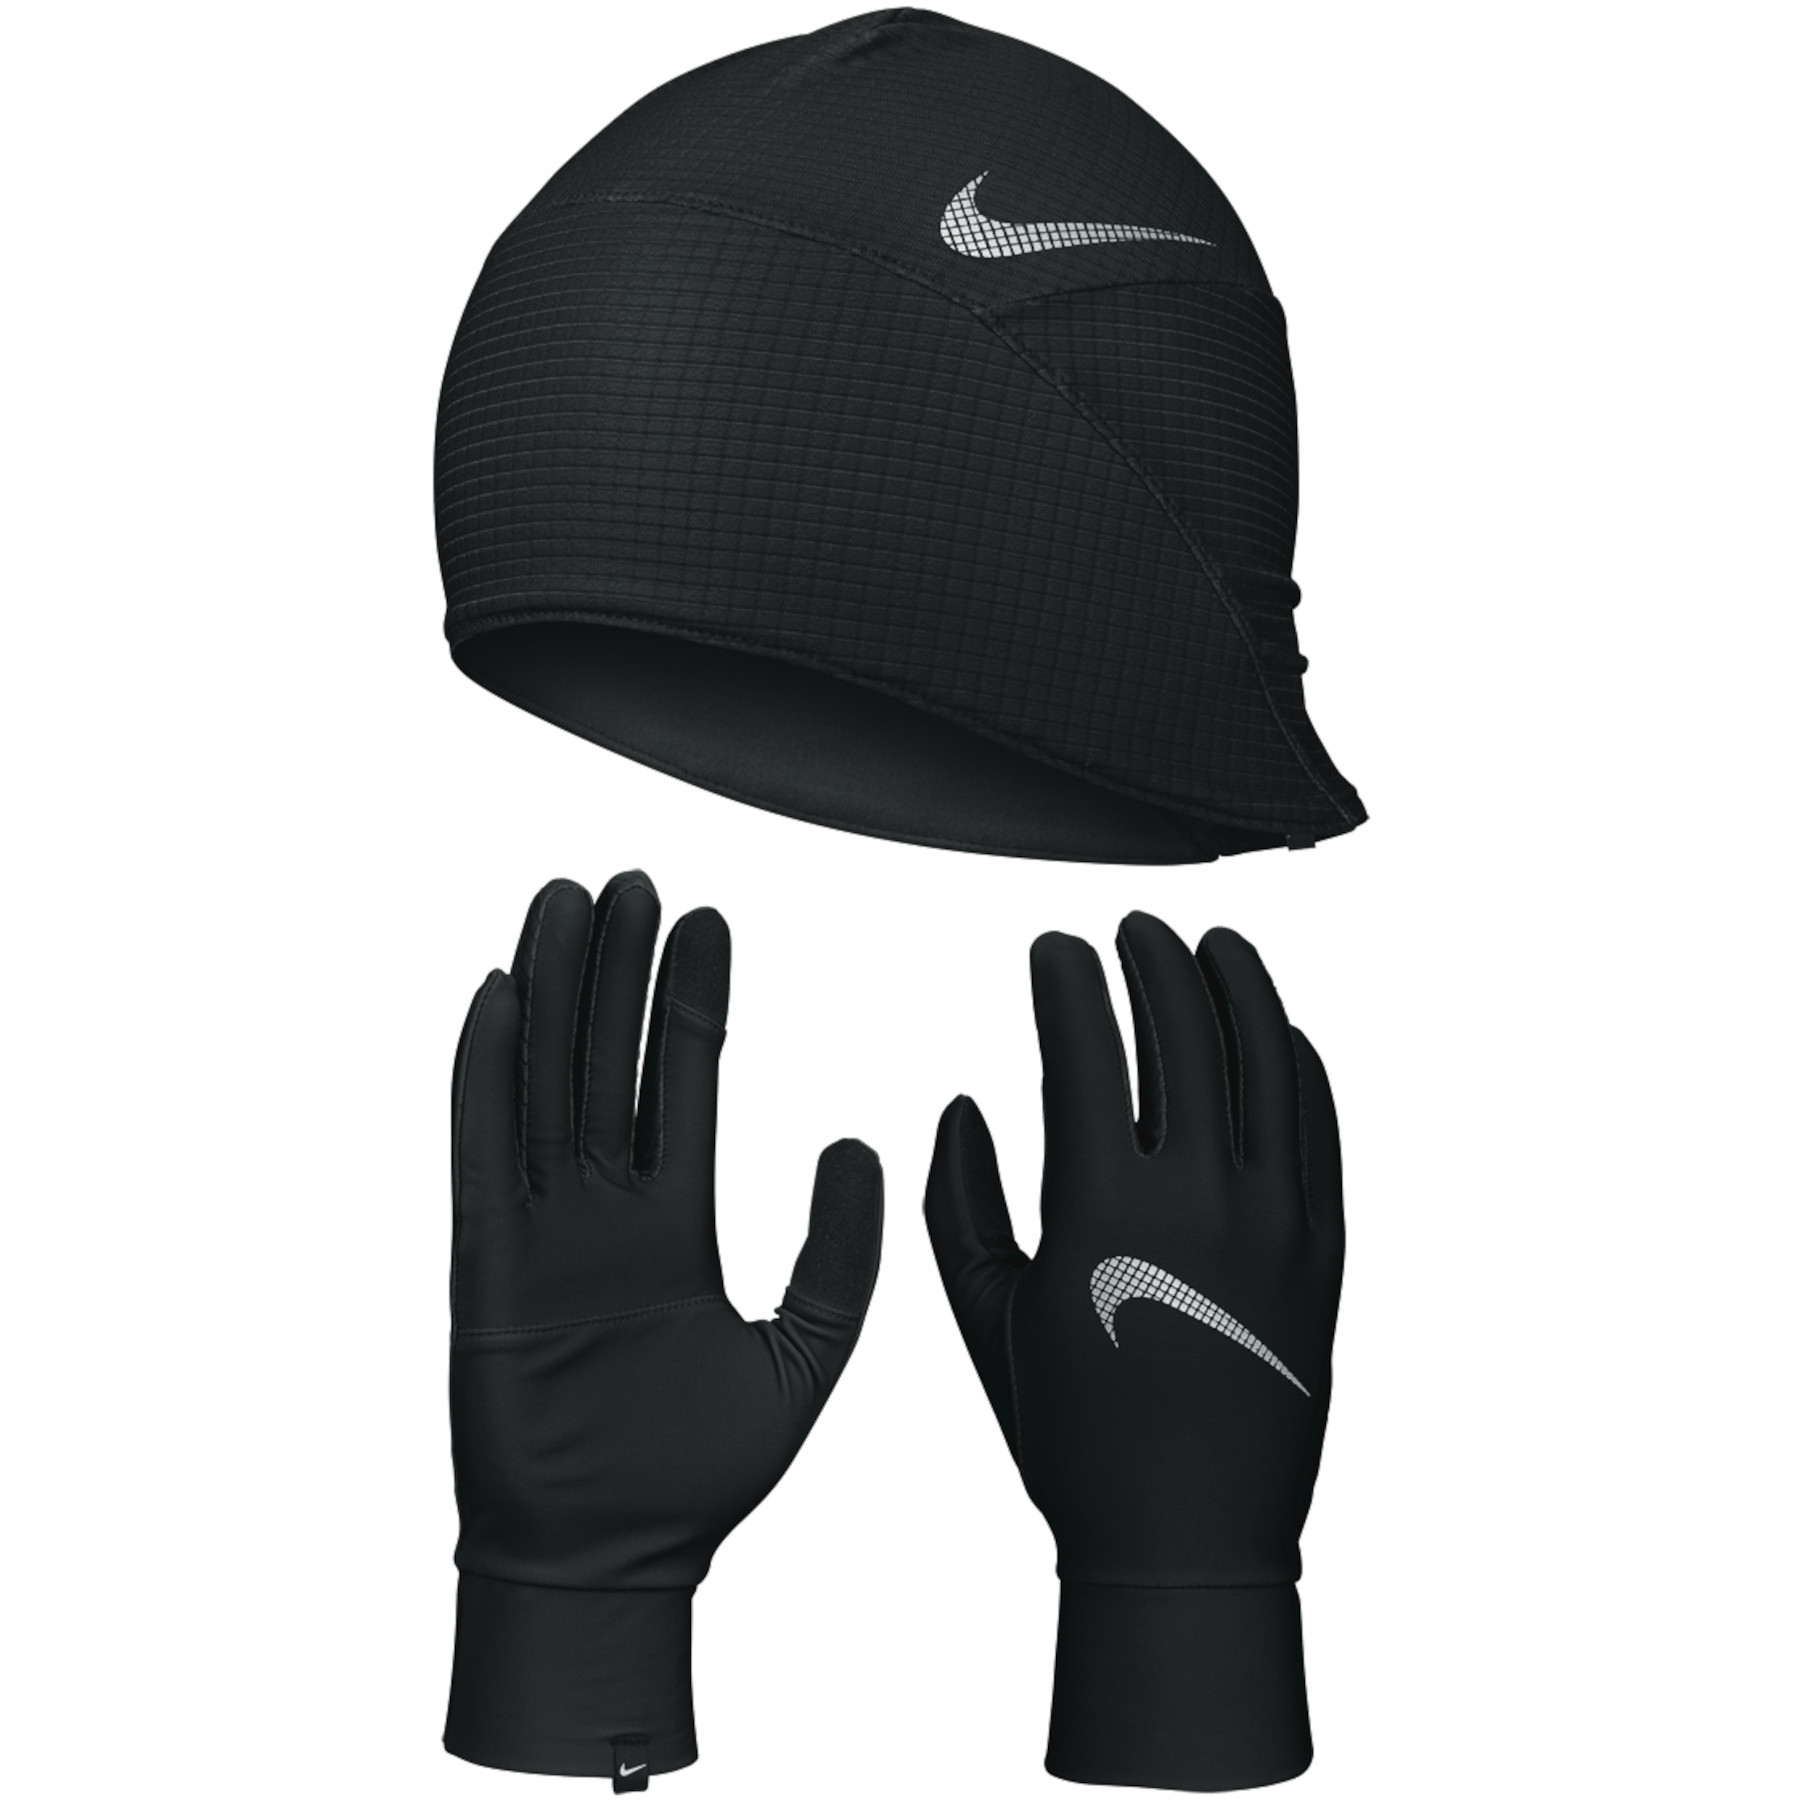 Productfoto van Nike Essential Running Set Heren Handschoenen + Muts - black/black/silver 082